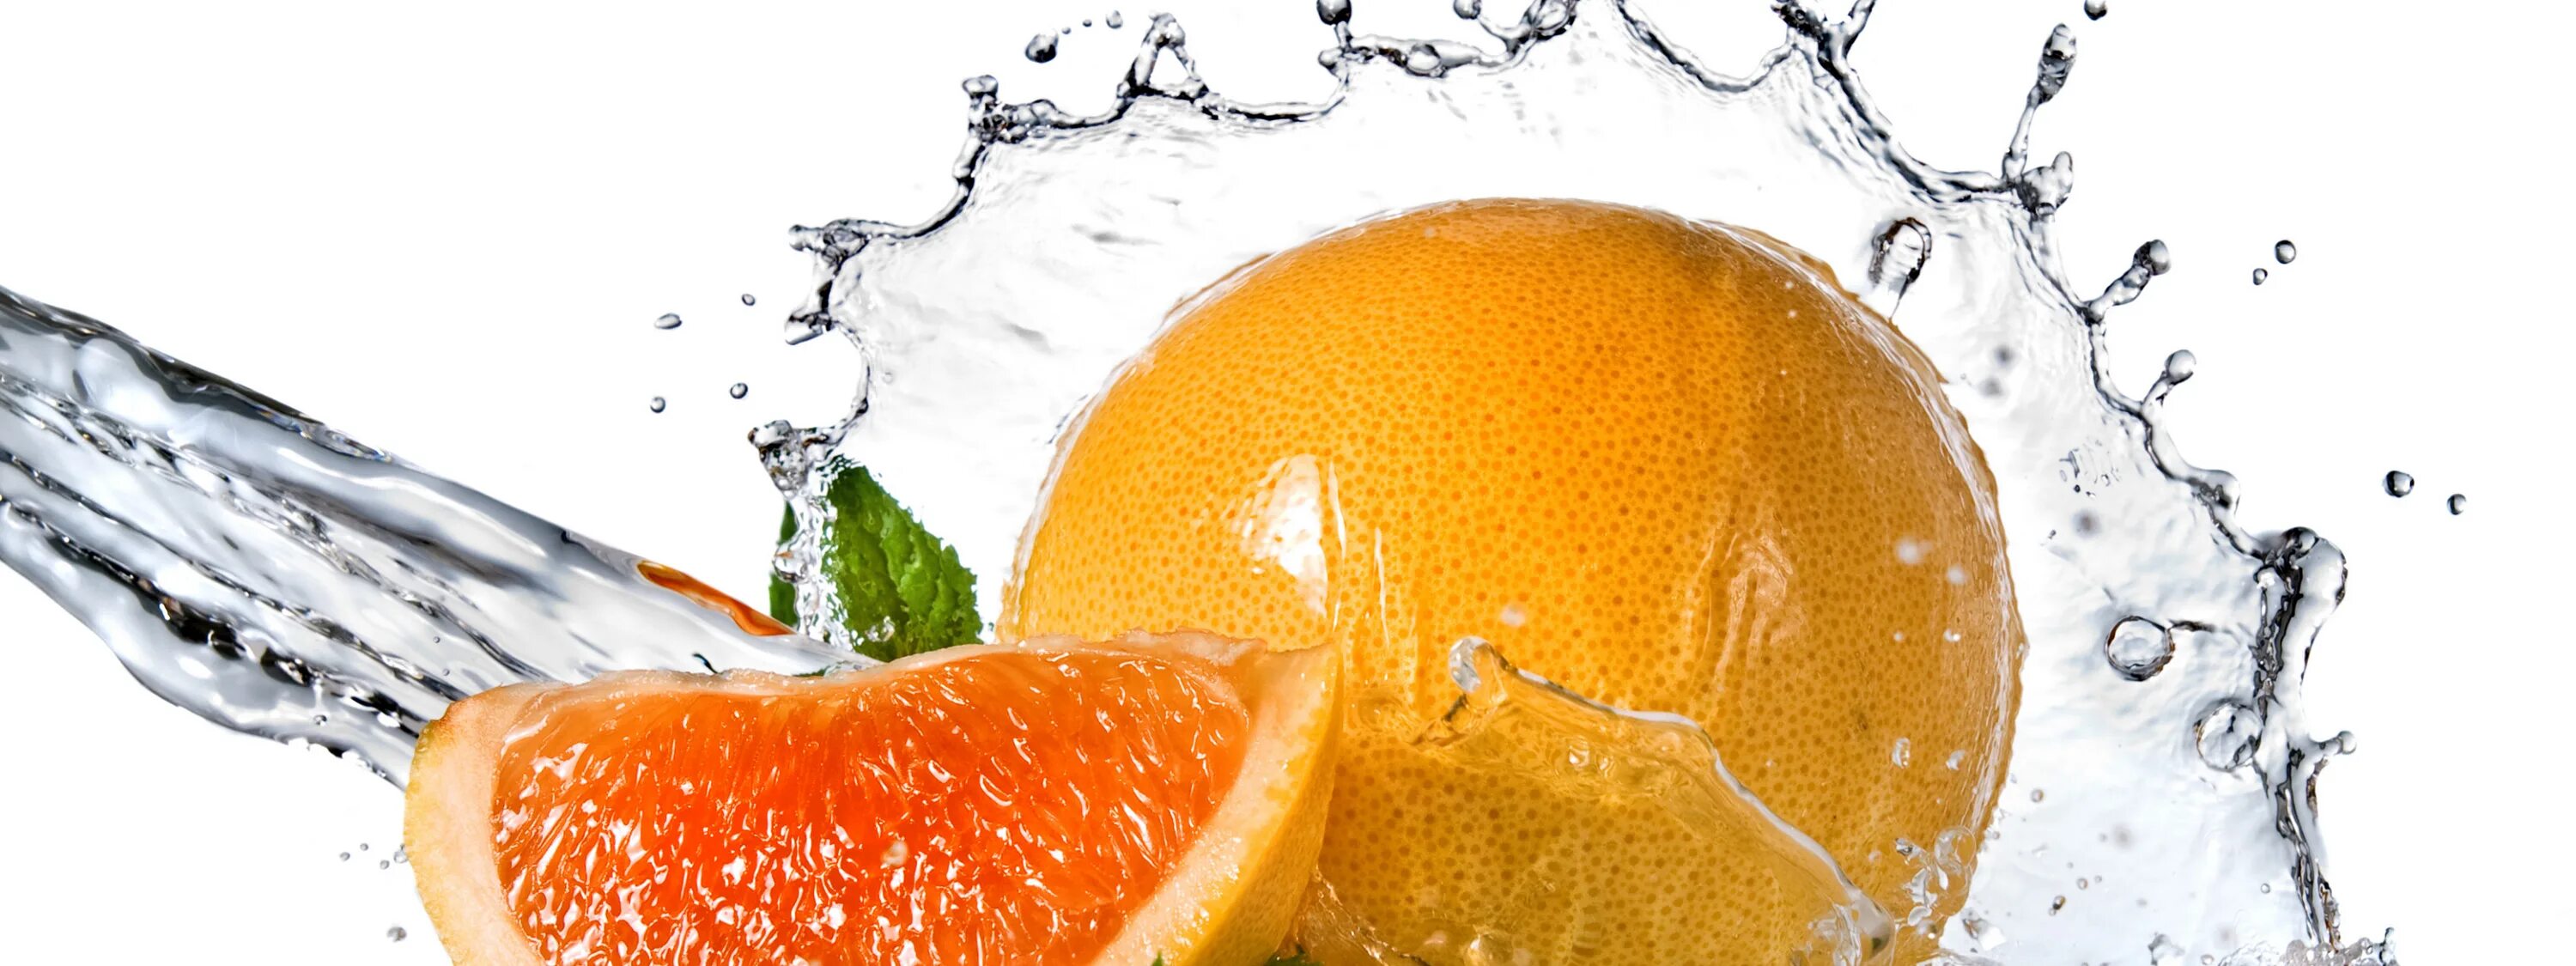 Апельсин в воде. Фруктовая свежесть. Фото фрукты в воде. Обои на рабочий стол апельсин в воде. Свежесть и качество